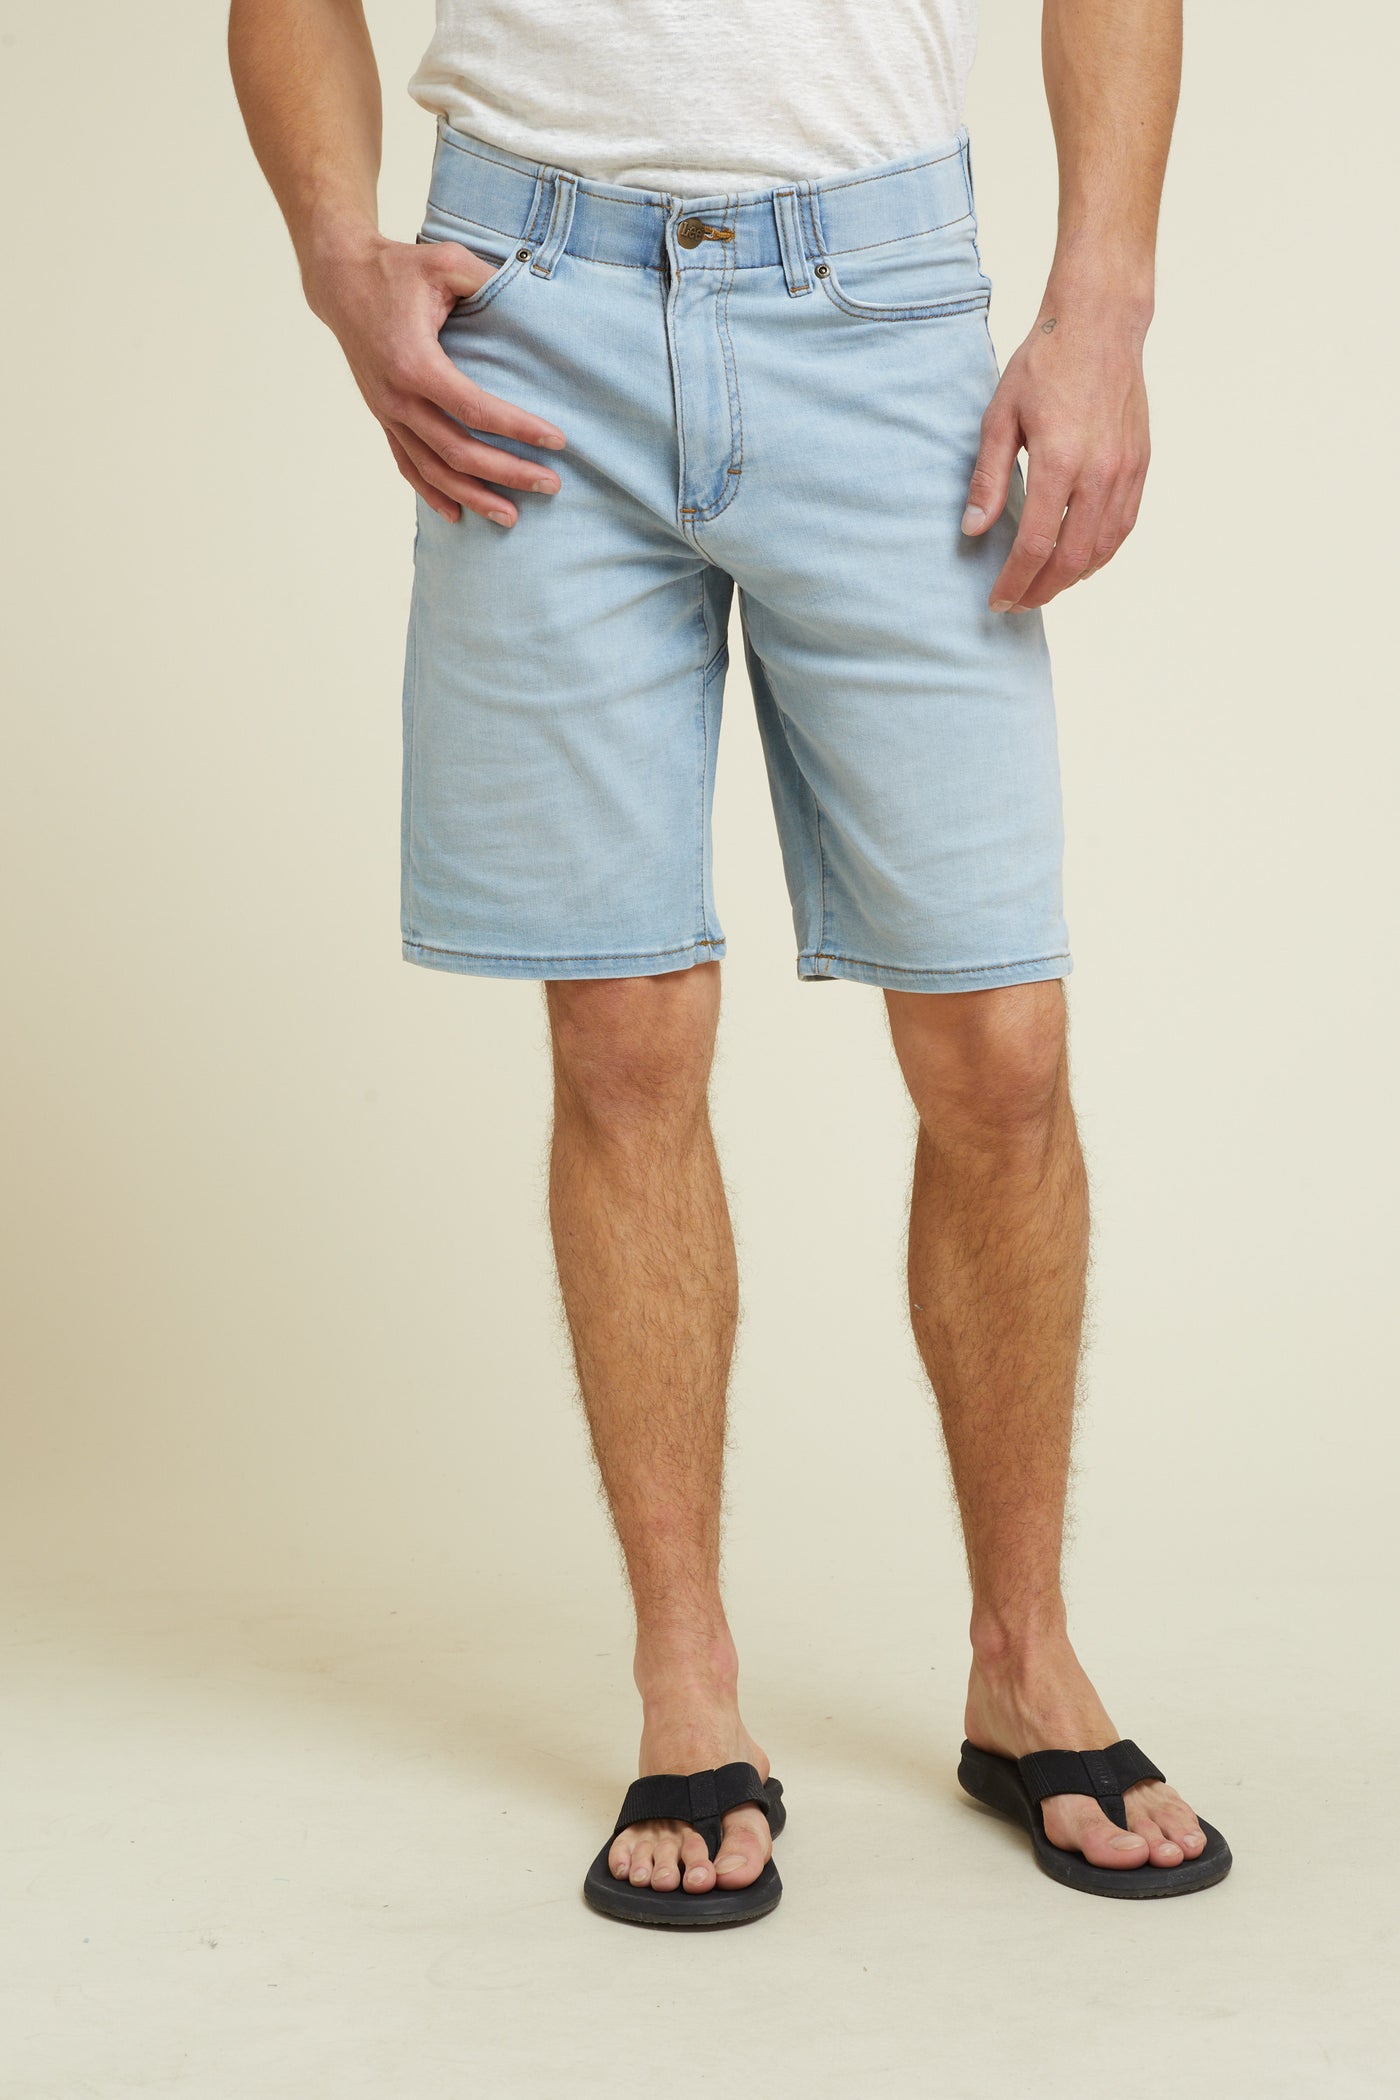 מכנס ג'ינס קצר בצבע בהיר